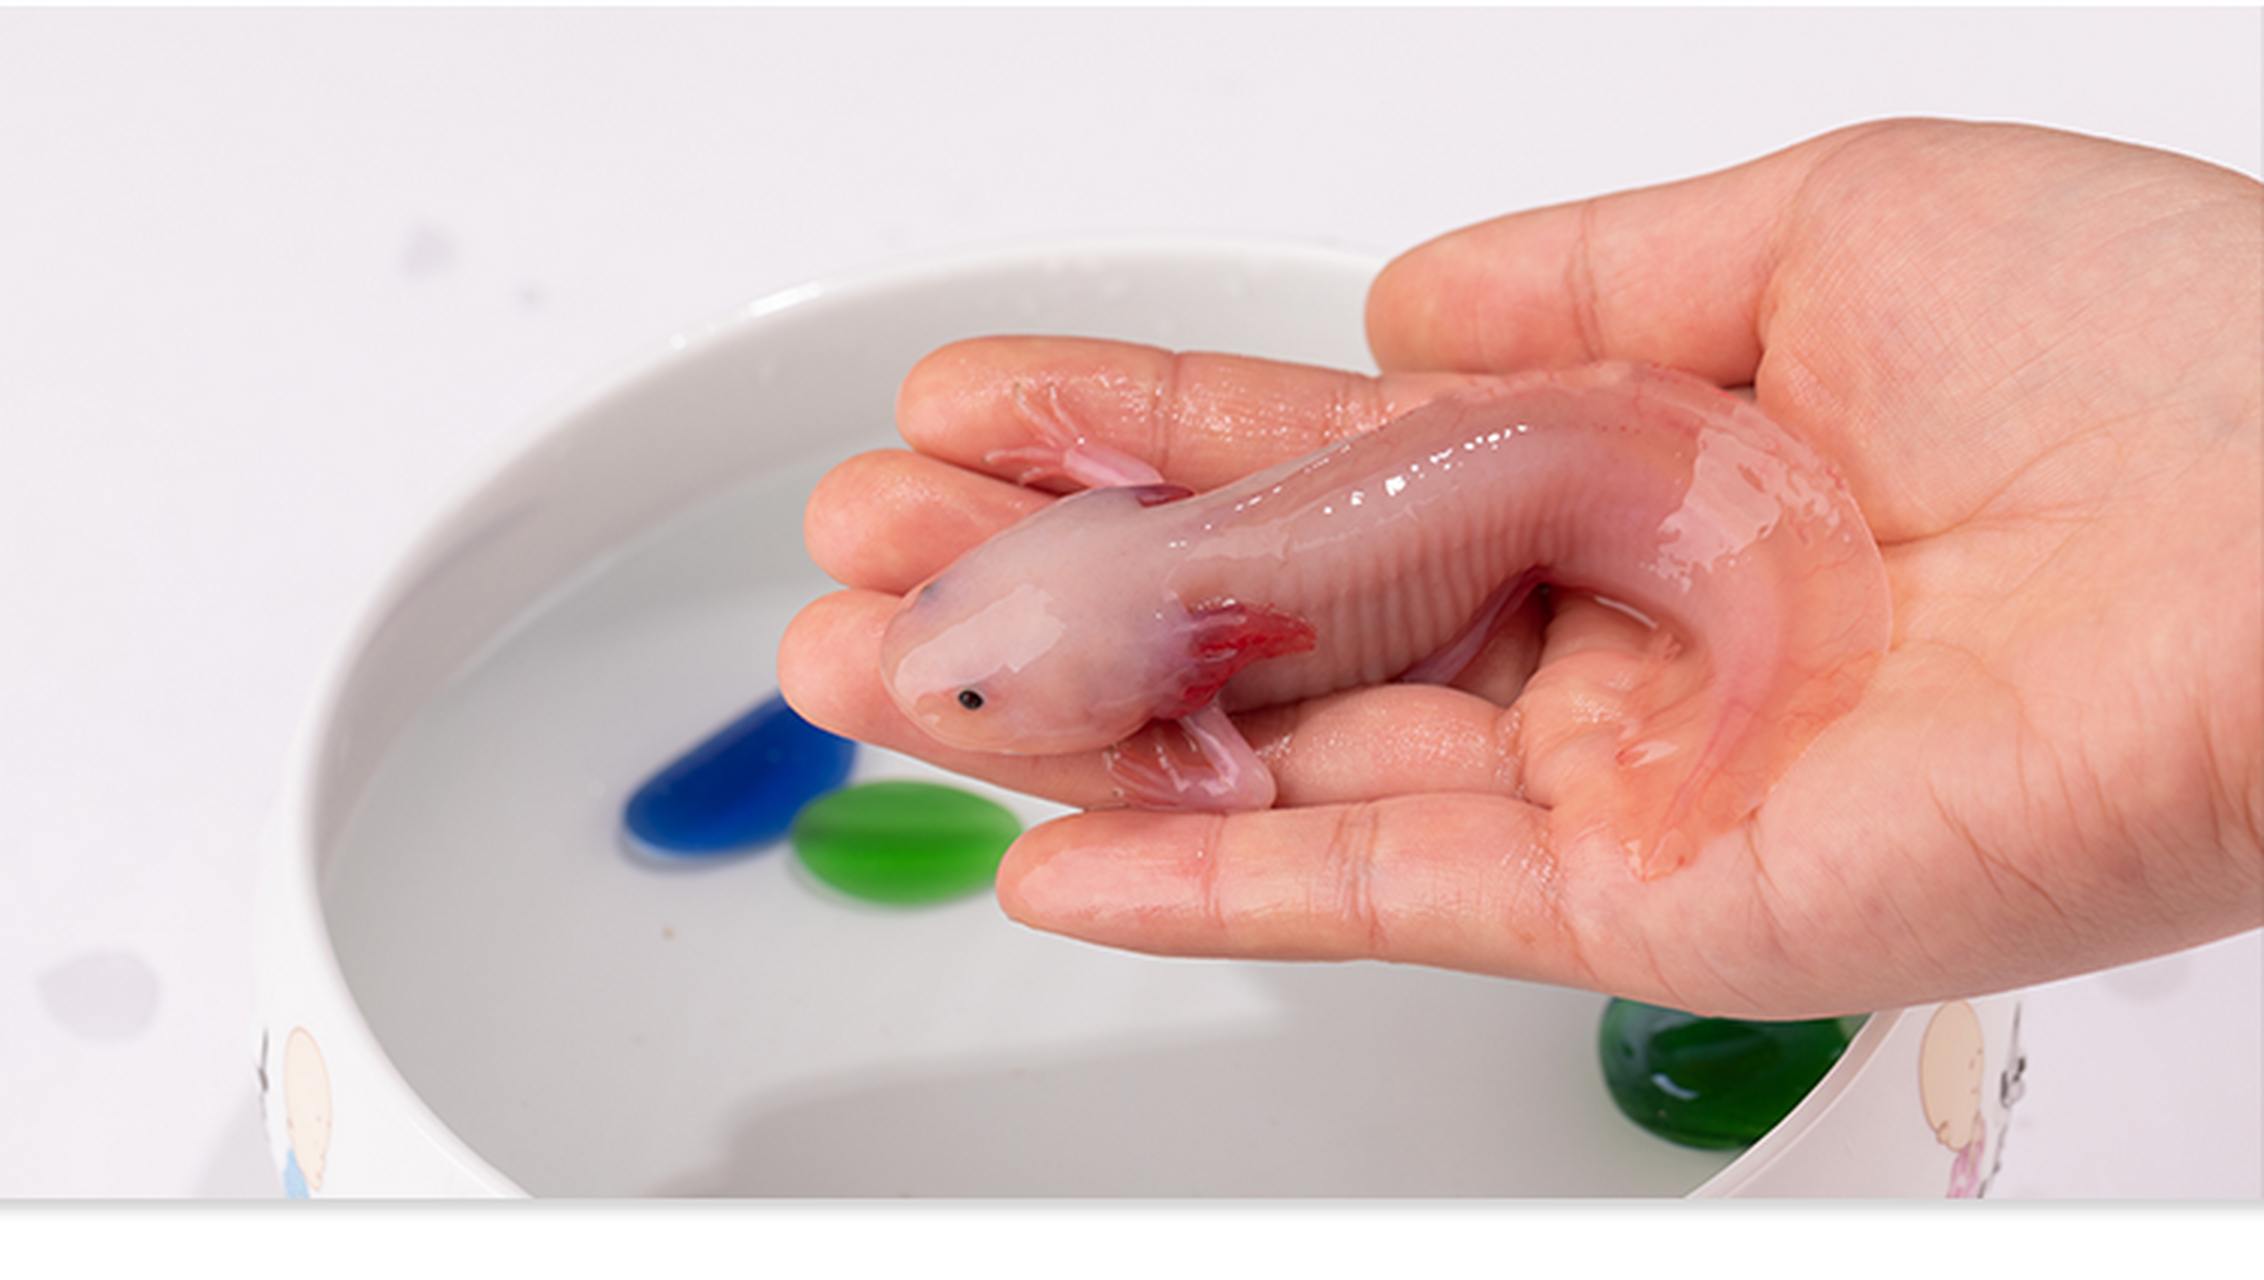 墨西哥钝口螈(英文名称:axolotl),又名美西螈,俗称六角恐龙,是水栖的